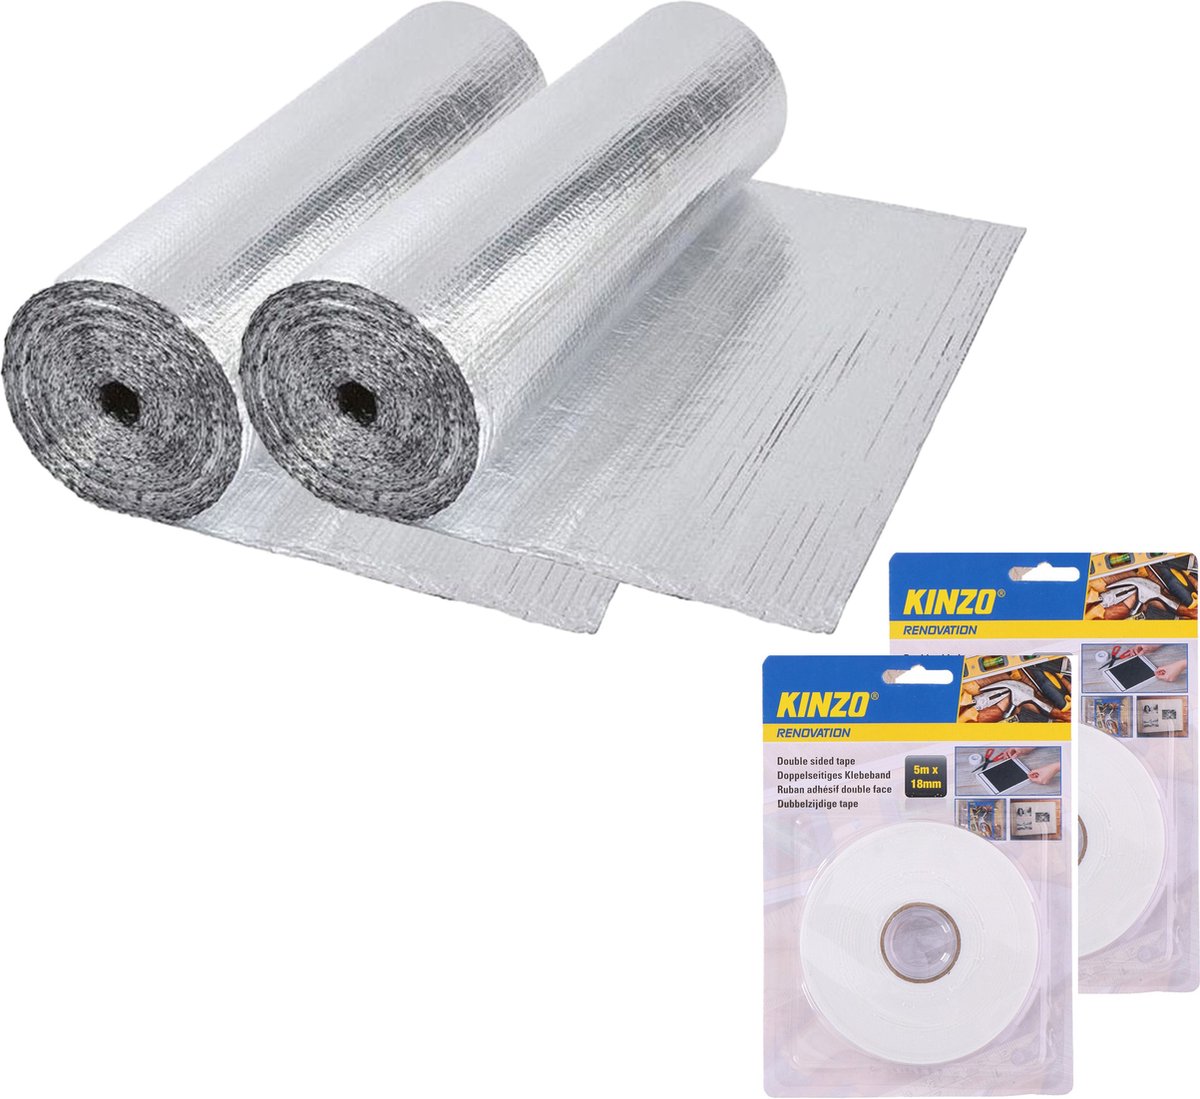 Radiatorfolie met bevestiging tape - 2x - 250 x 45 cm - aluminium - energiebesparende isolatiefolie